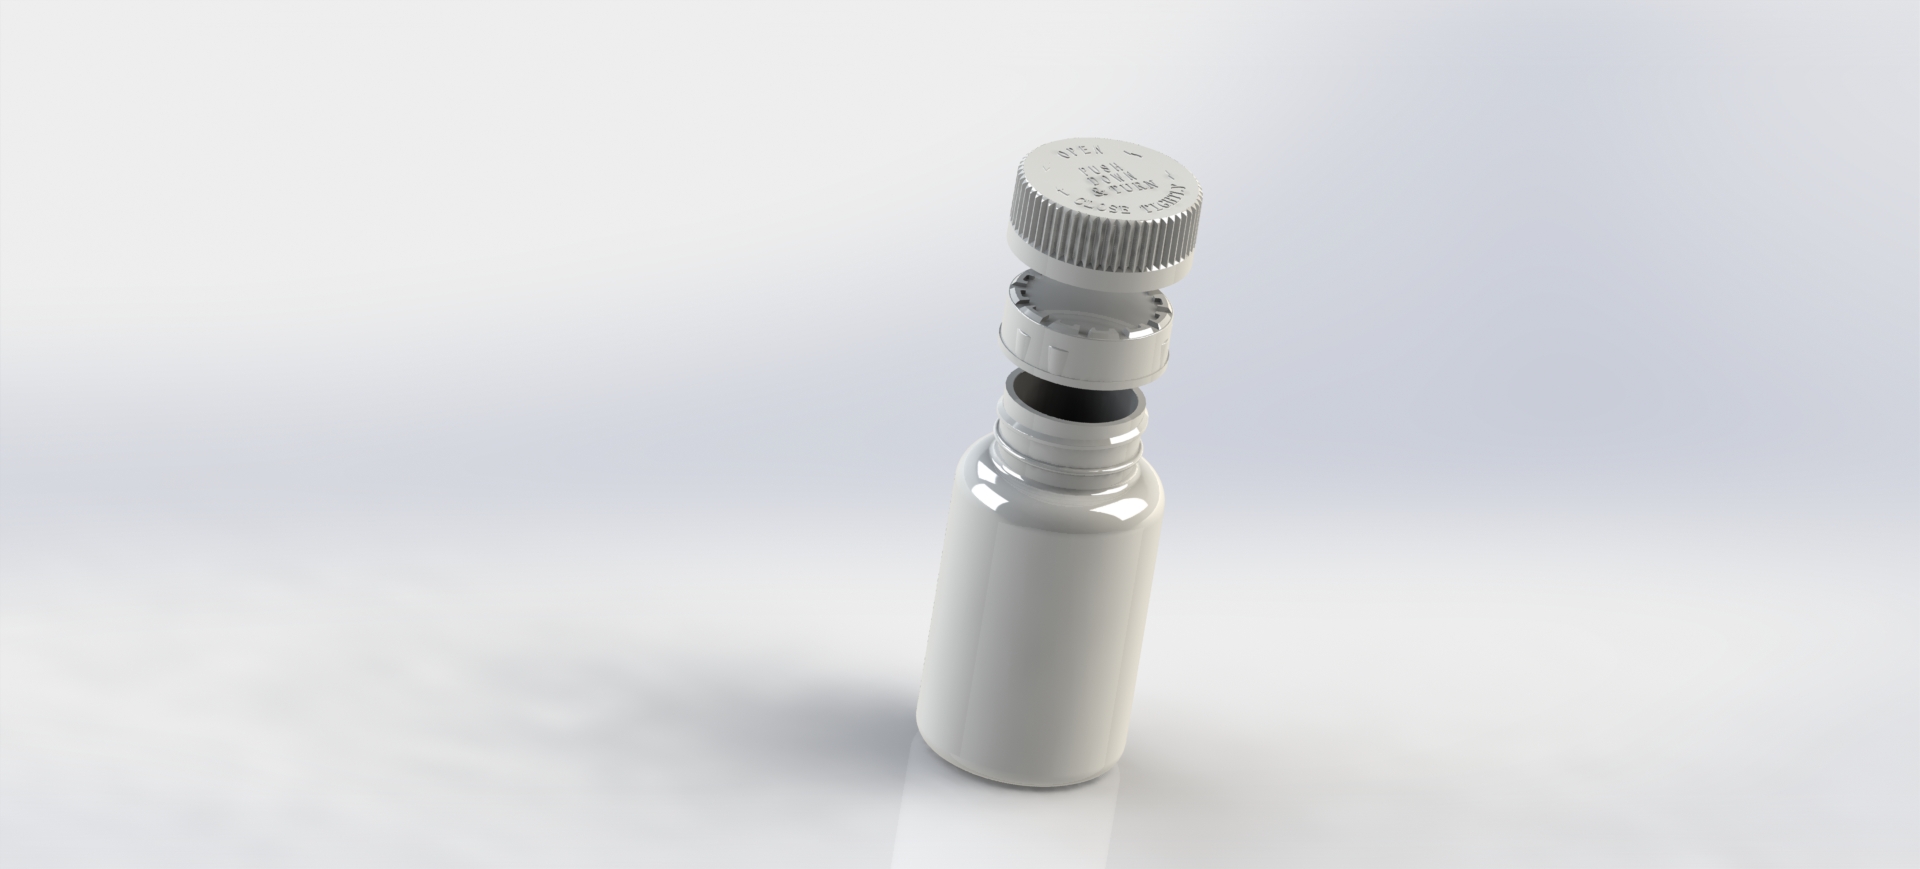 高密度聚乙烯瓶这项指标不过关 药品分分钟被污染